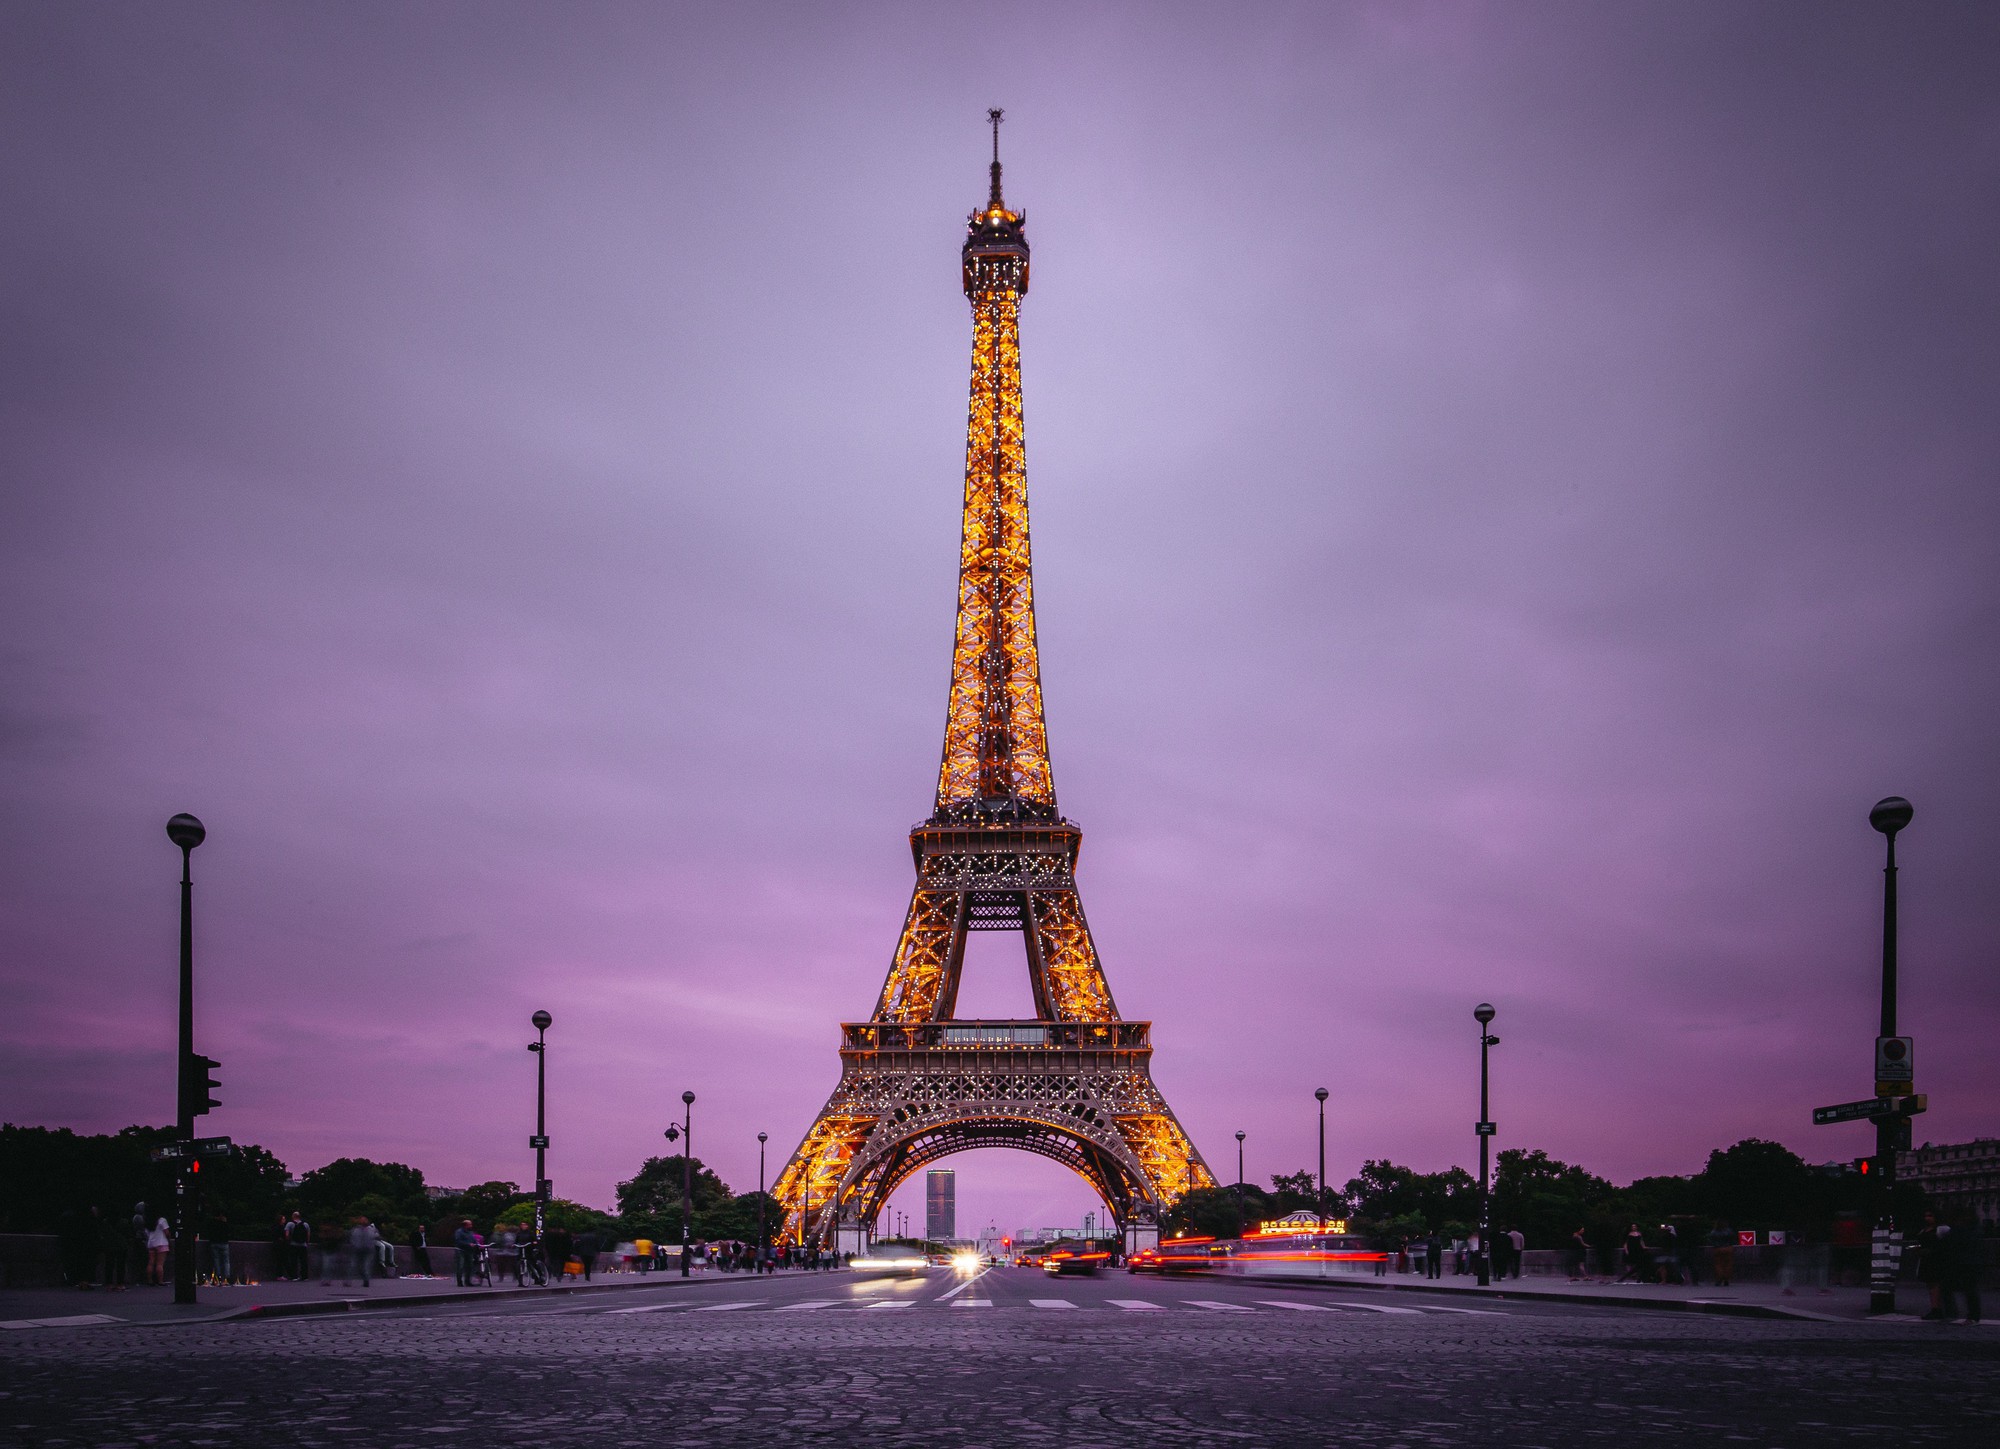 Tháp Eiffel ở Paris | Những ngày hưu trí